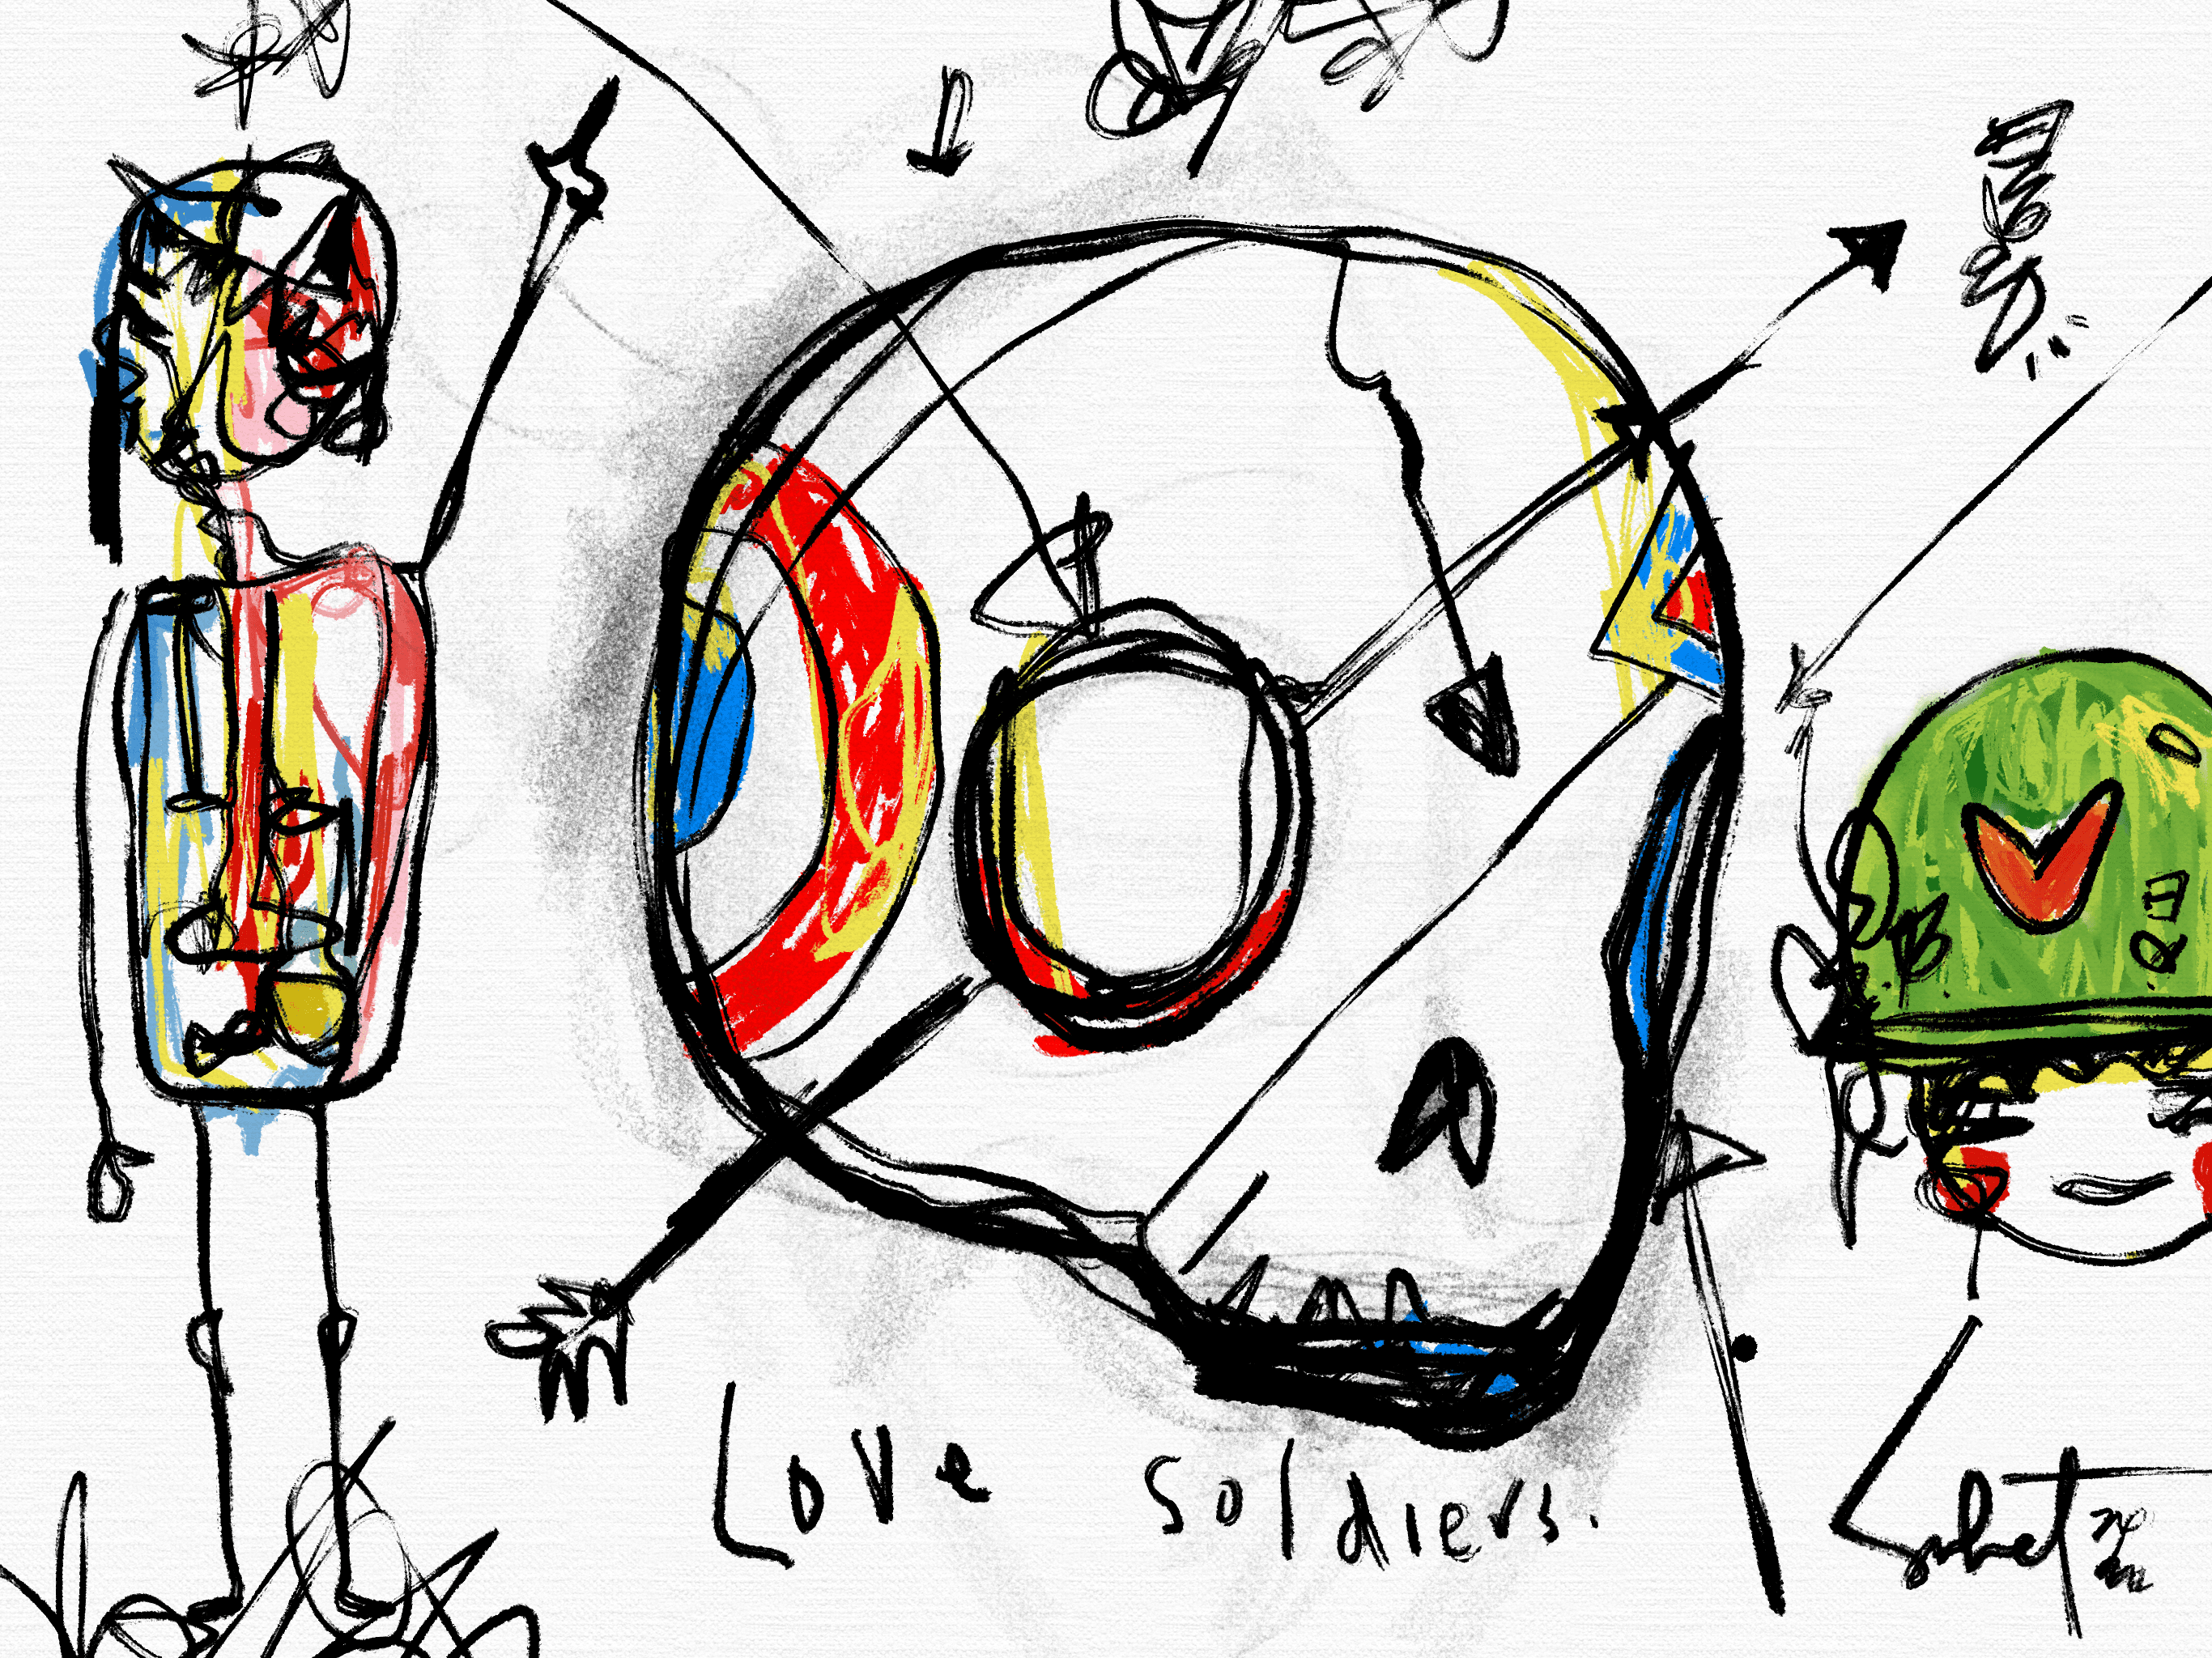 LOVE SOLDIERS 2022 SABET